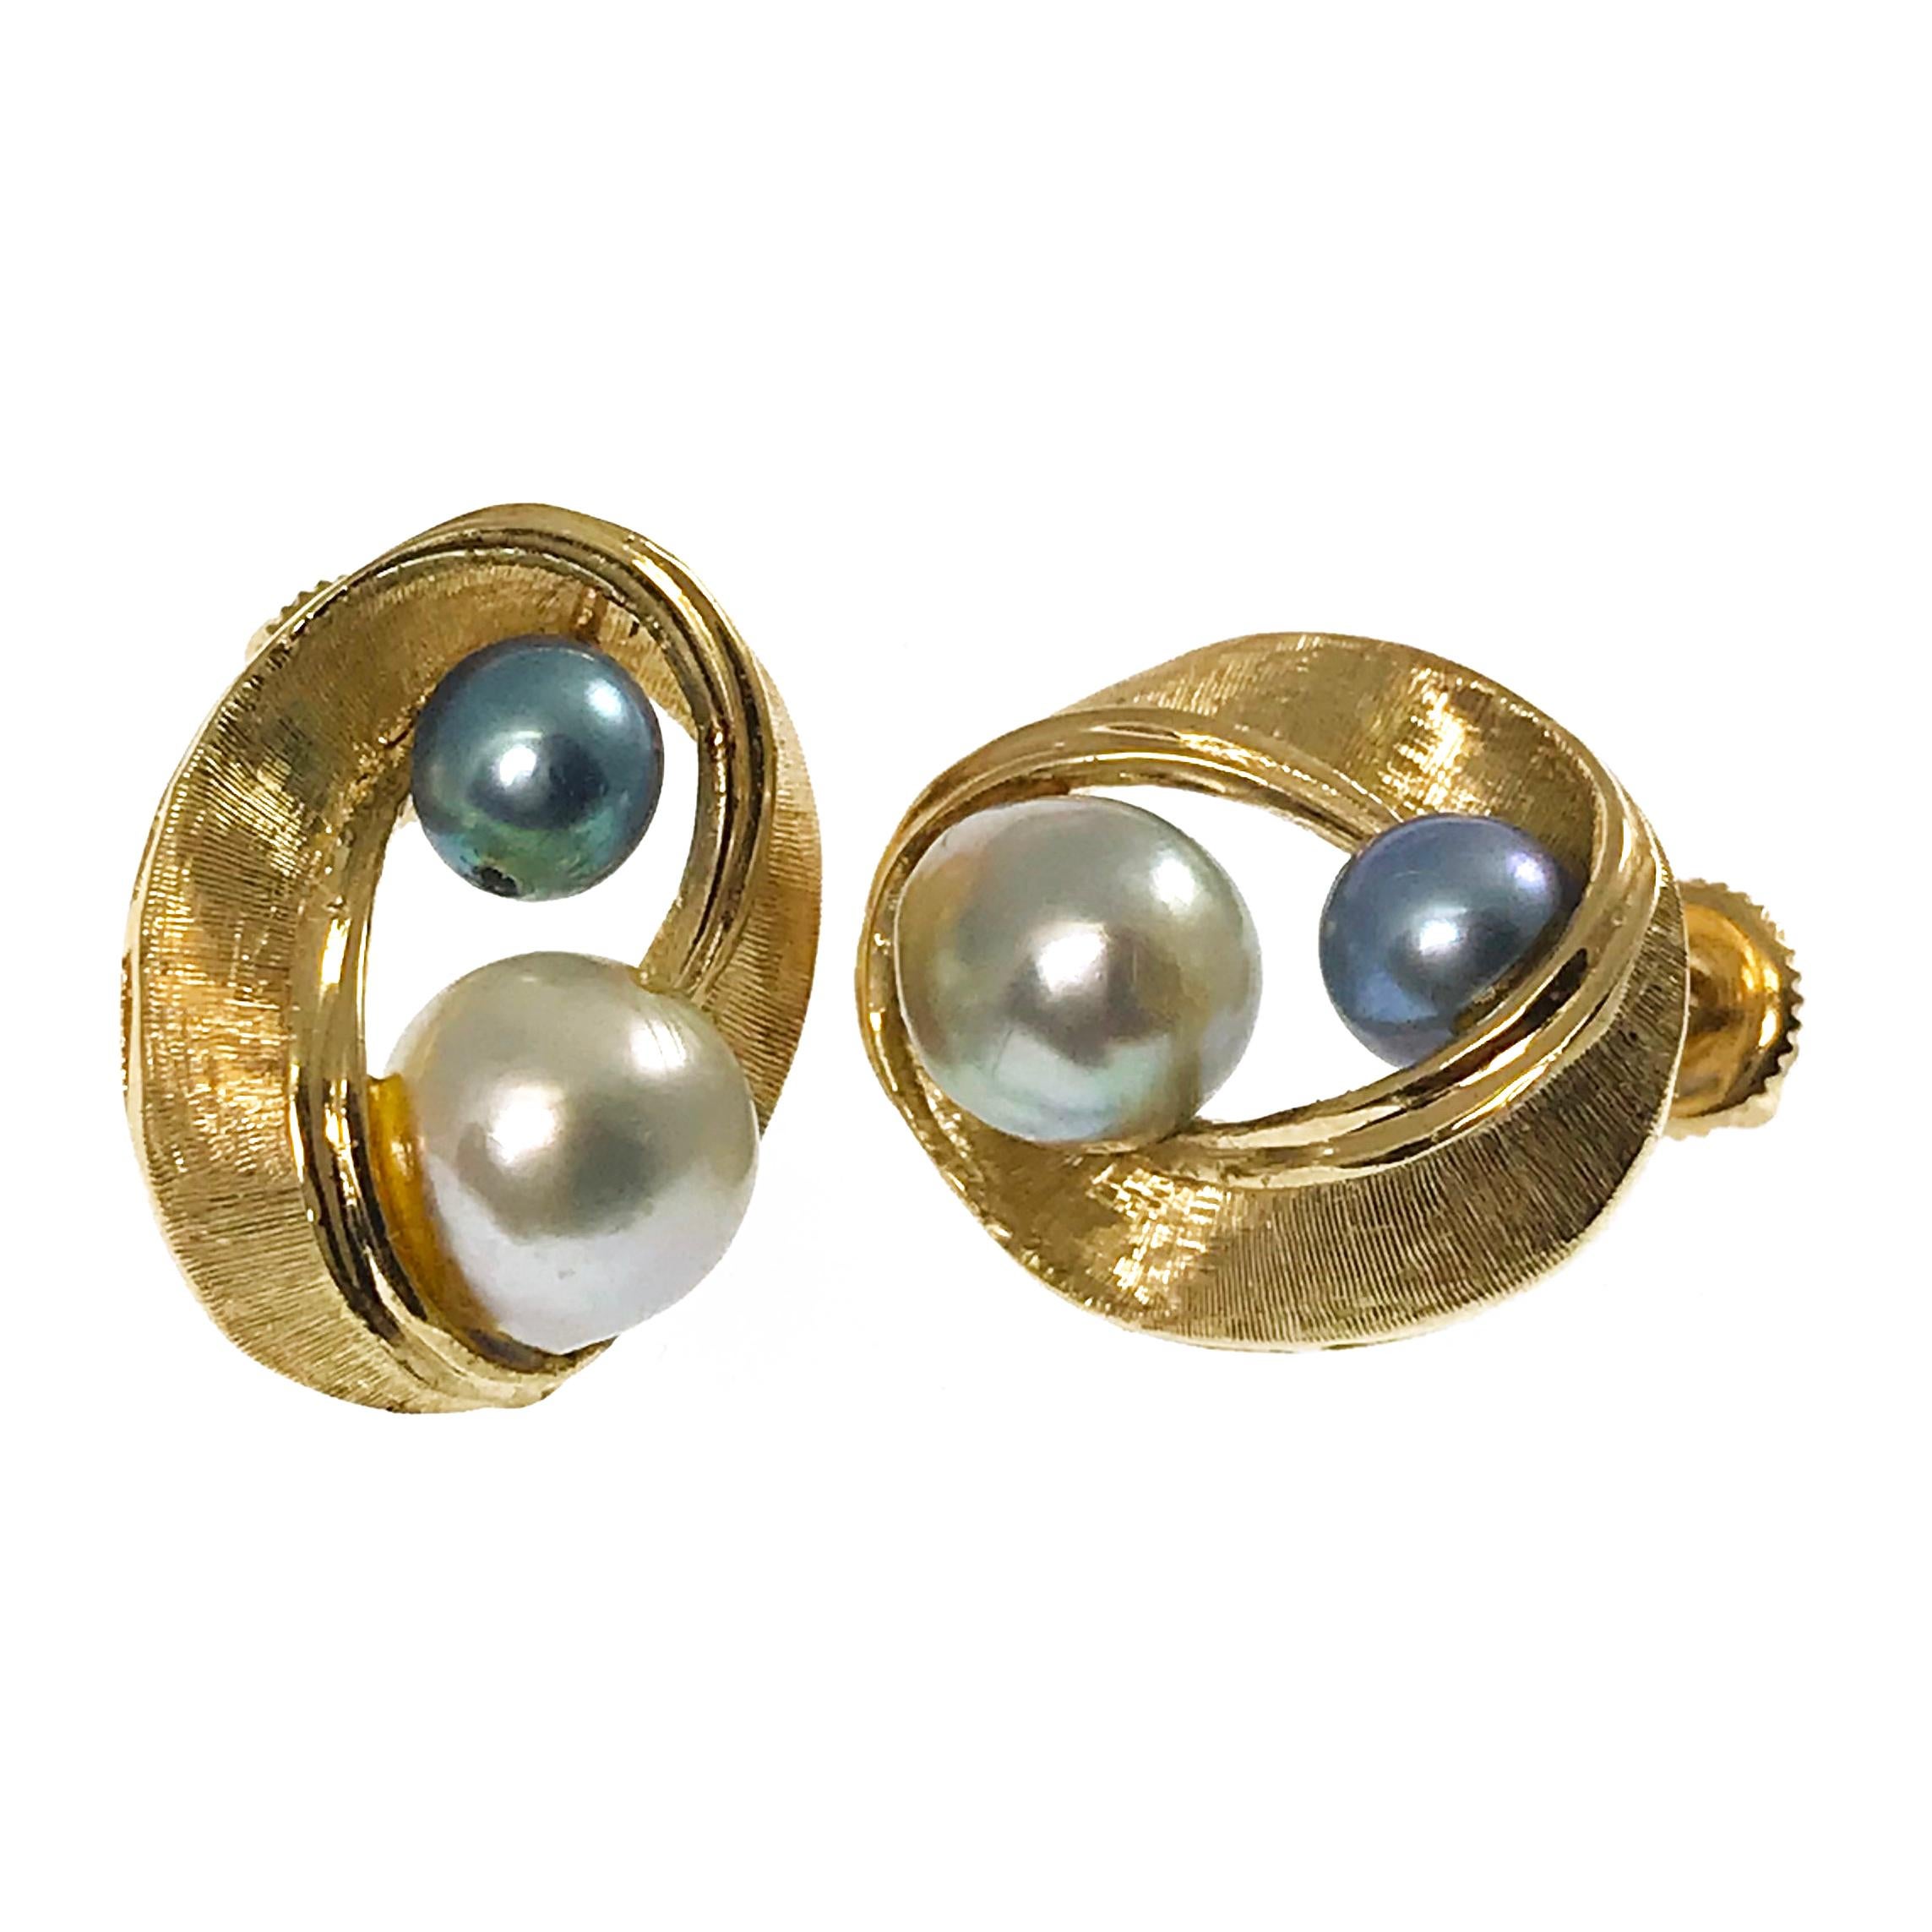 boucles d'oreilles tourbillon de perles blanches et bleu-gris 14 carats. Ces boucles d'oreilles comportent deux perles bleu-gris (entièrement percées) et un ruban tourbillonnant doré texturé. Les perles sont serties sur le haut et le bas de la